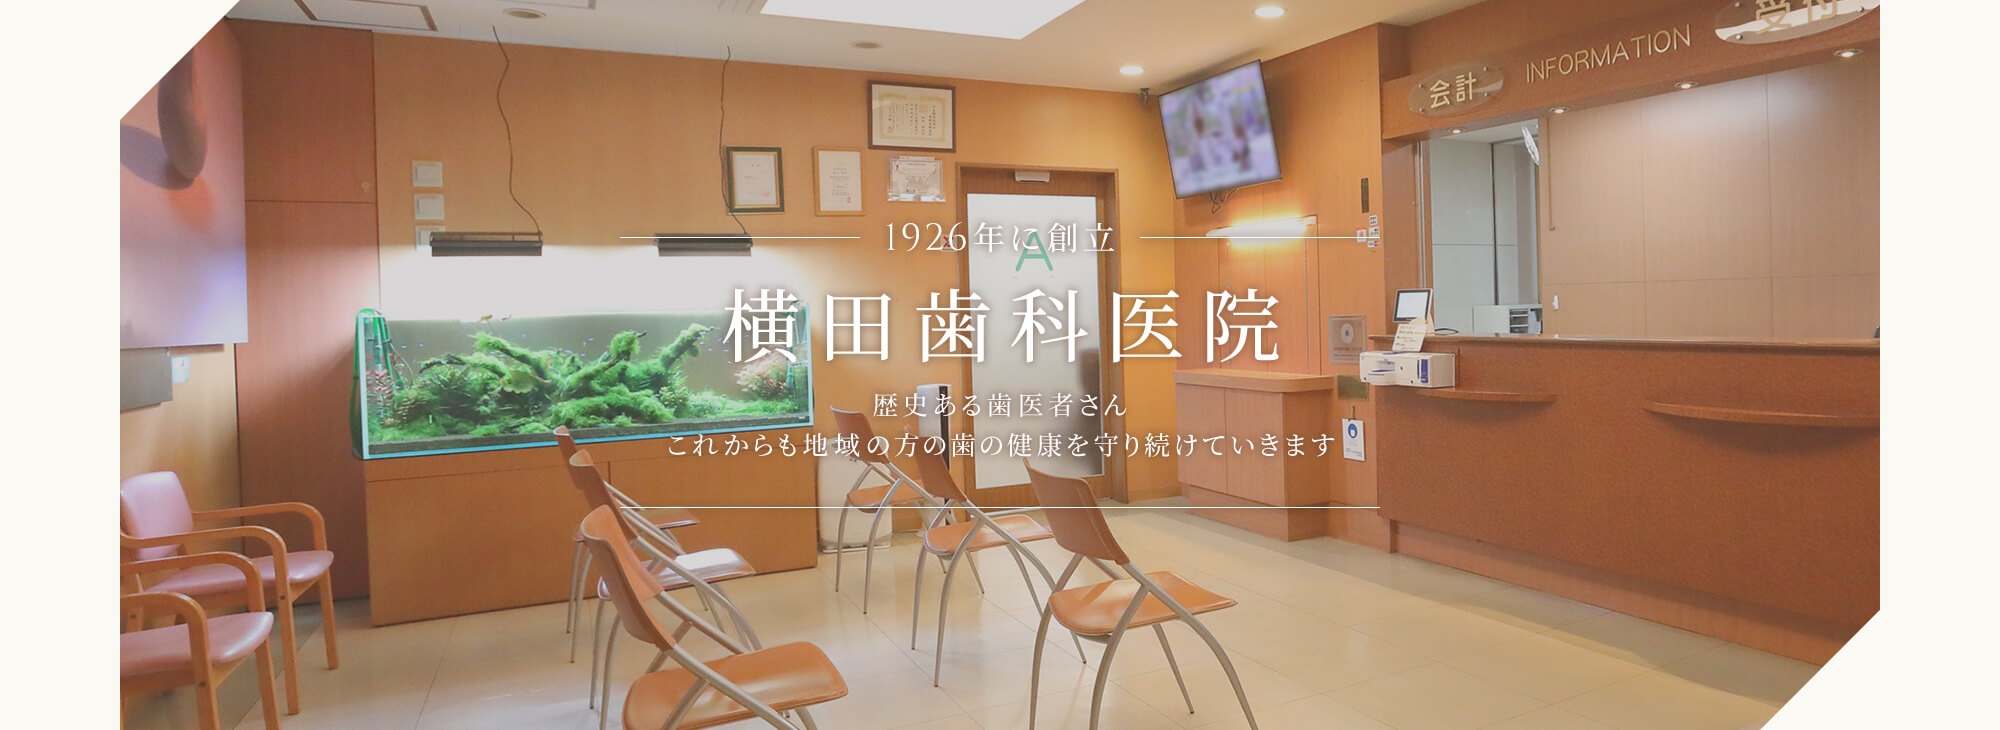 1926年に創立 横田歯科医院 歴史ある歯医者さん これからも地域の方の歯の健康を守り続けていきます